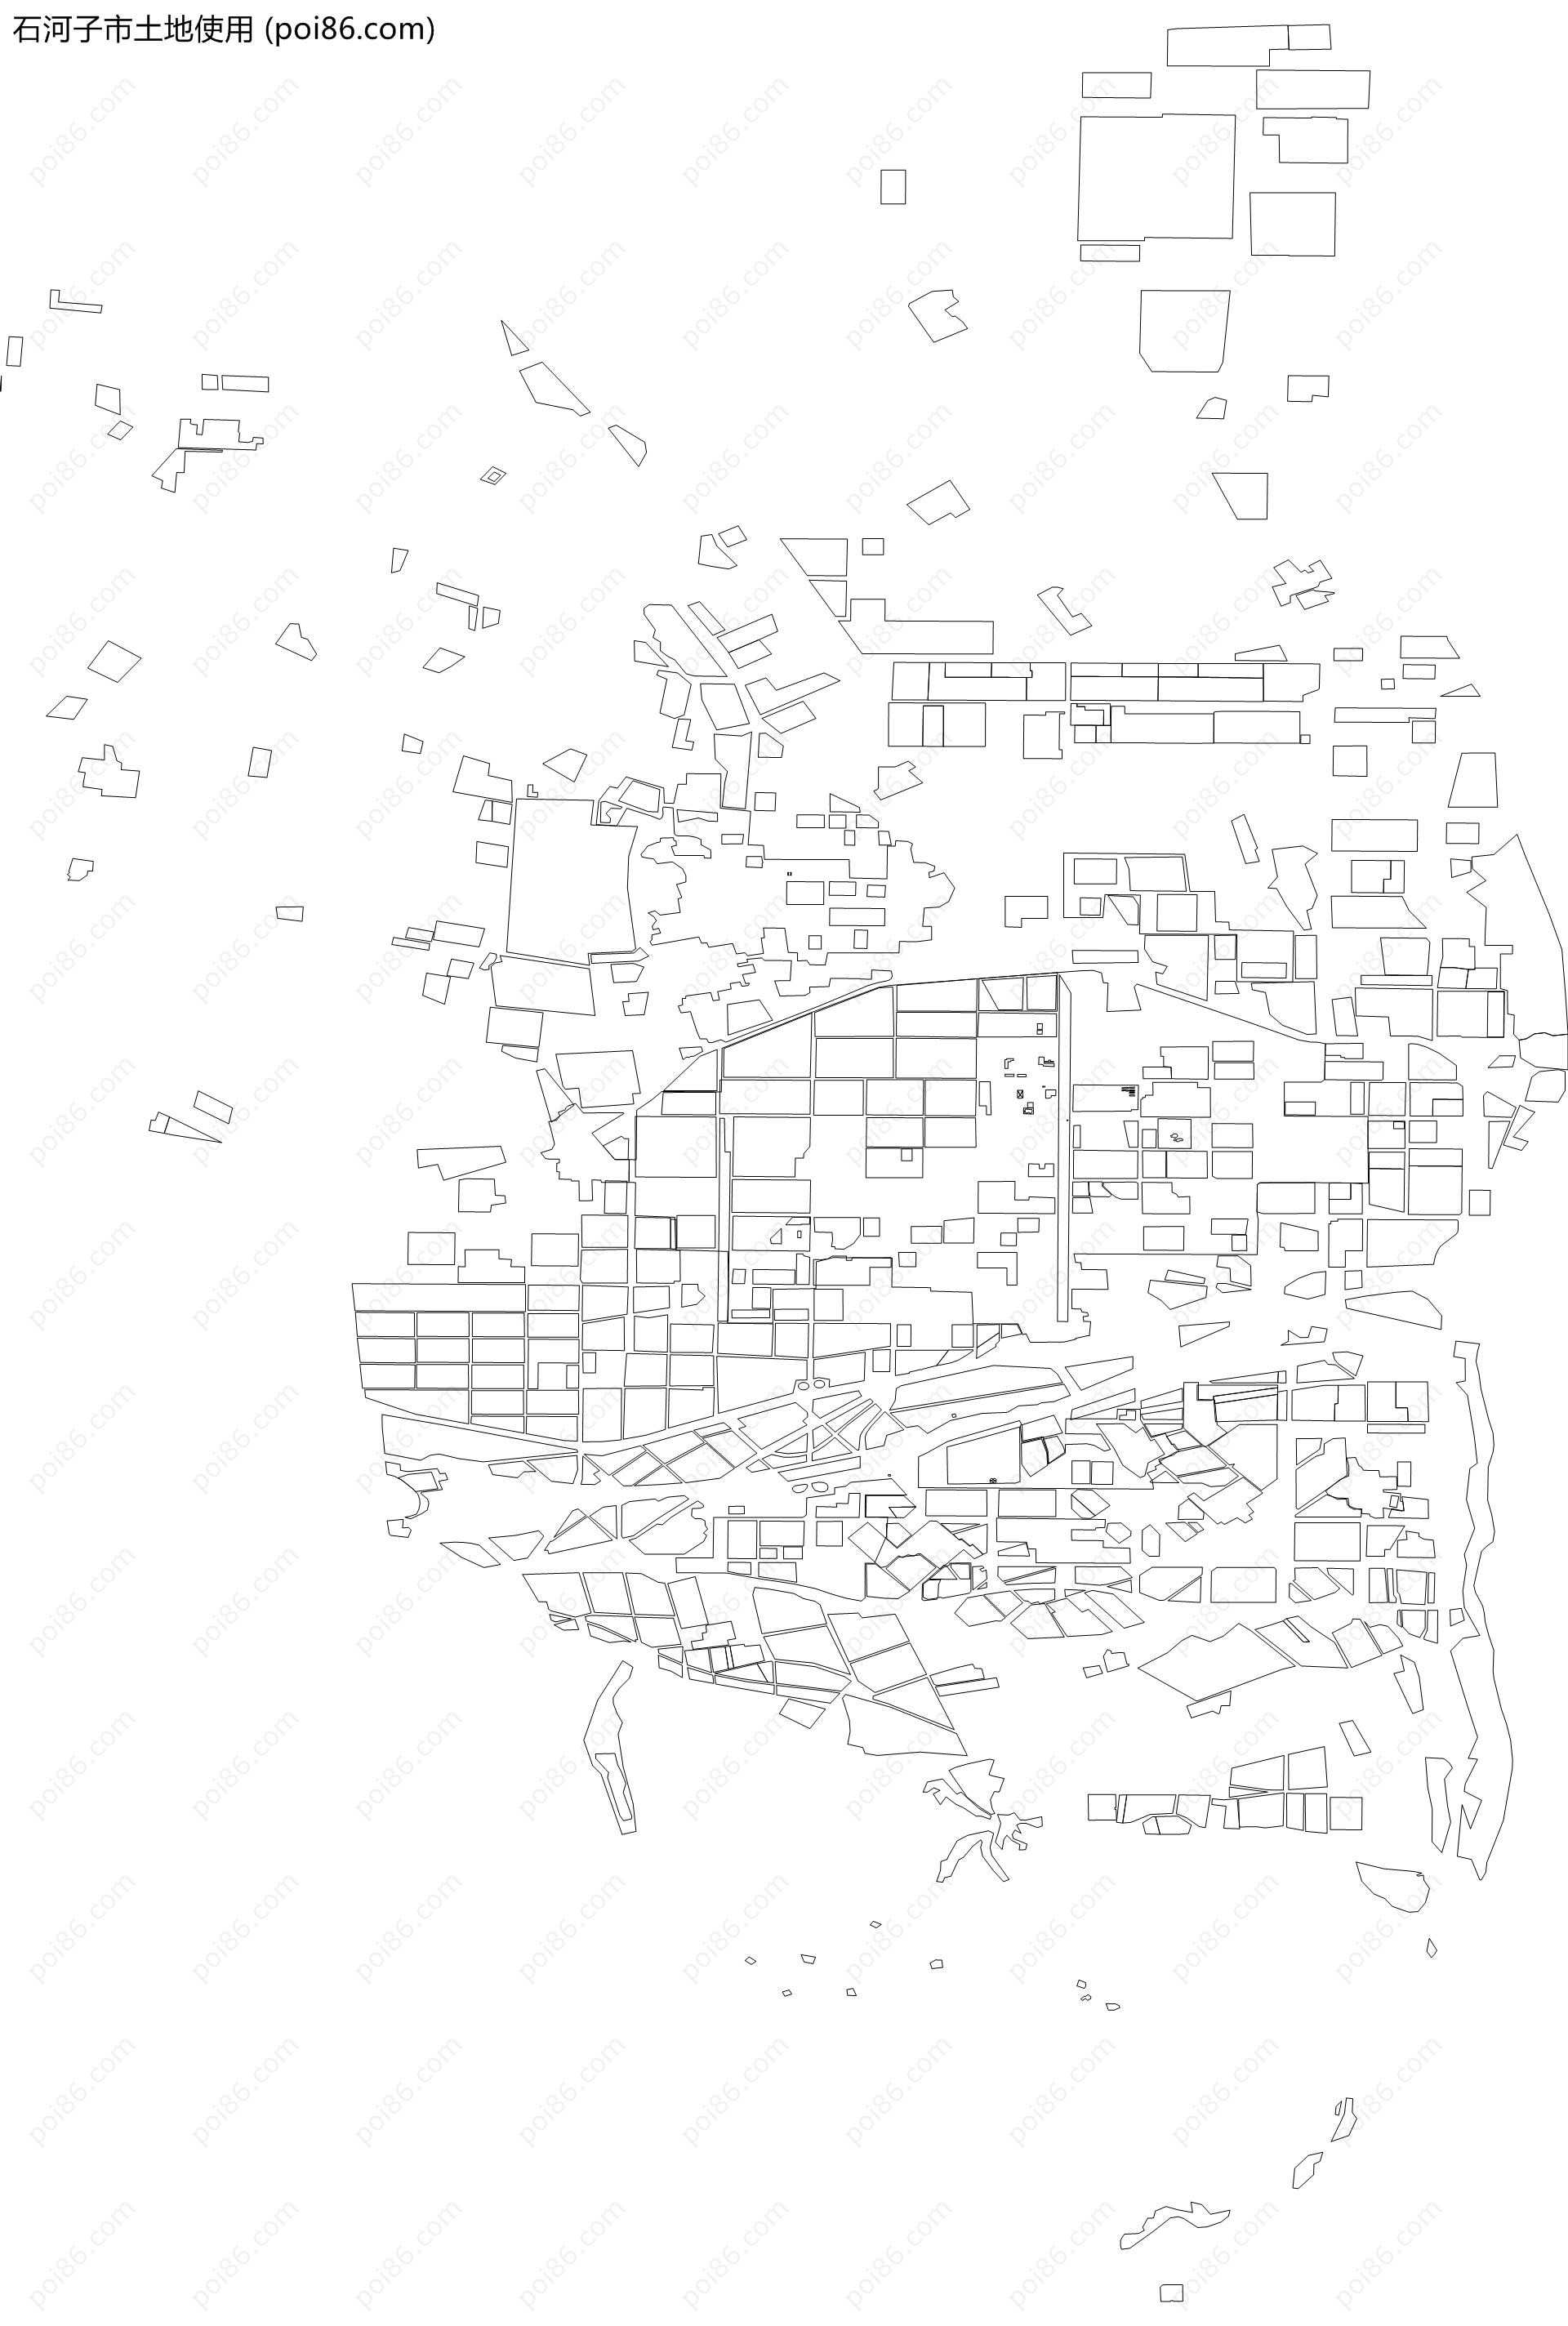 石河子市土地使用地图